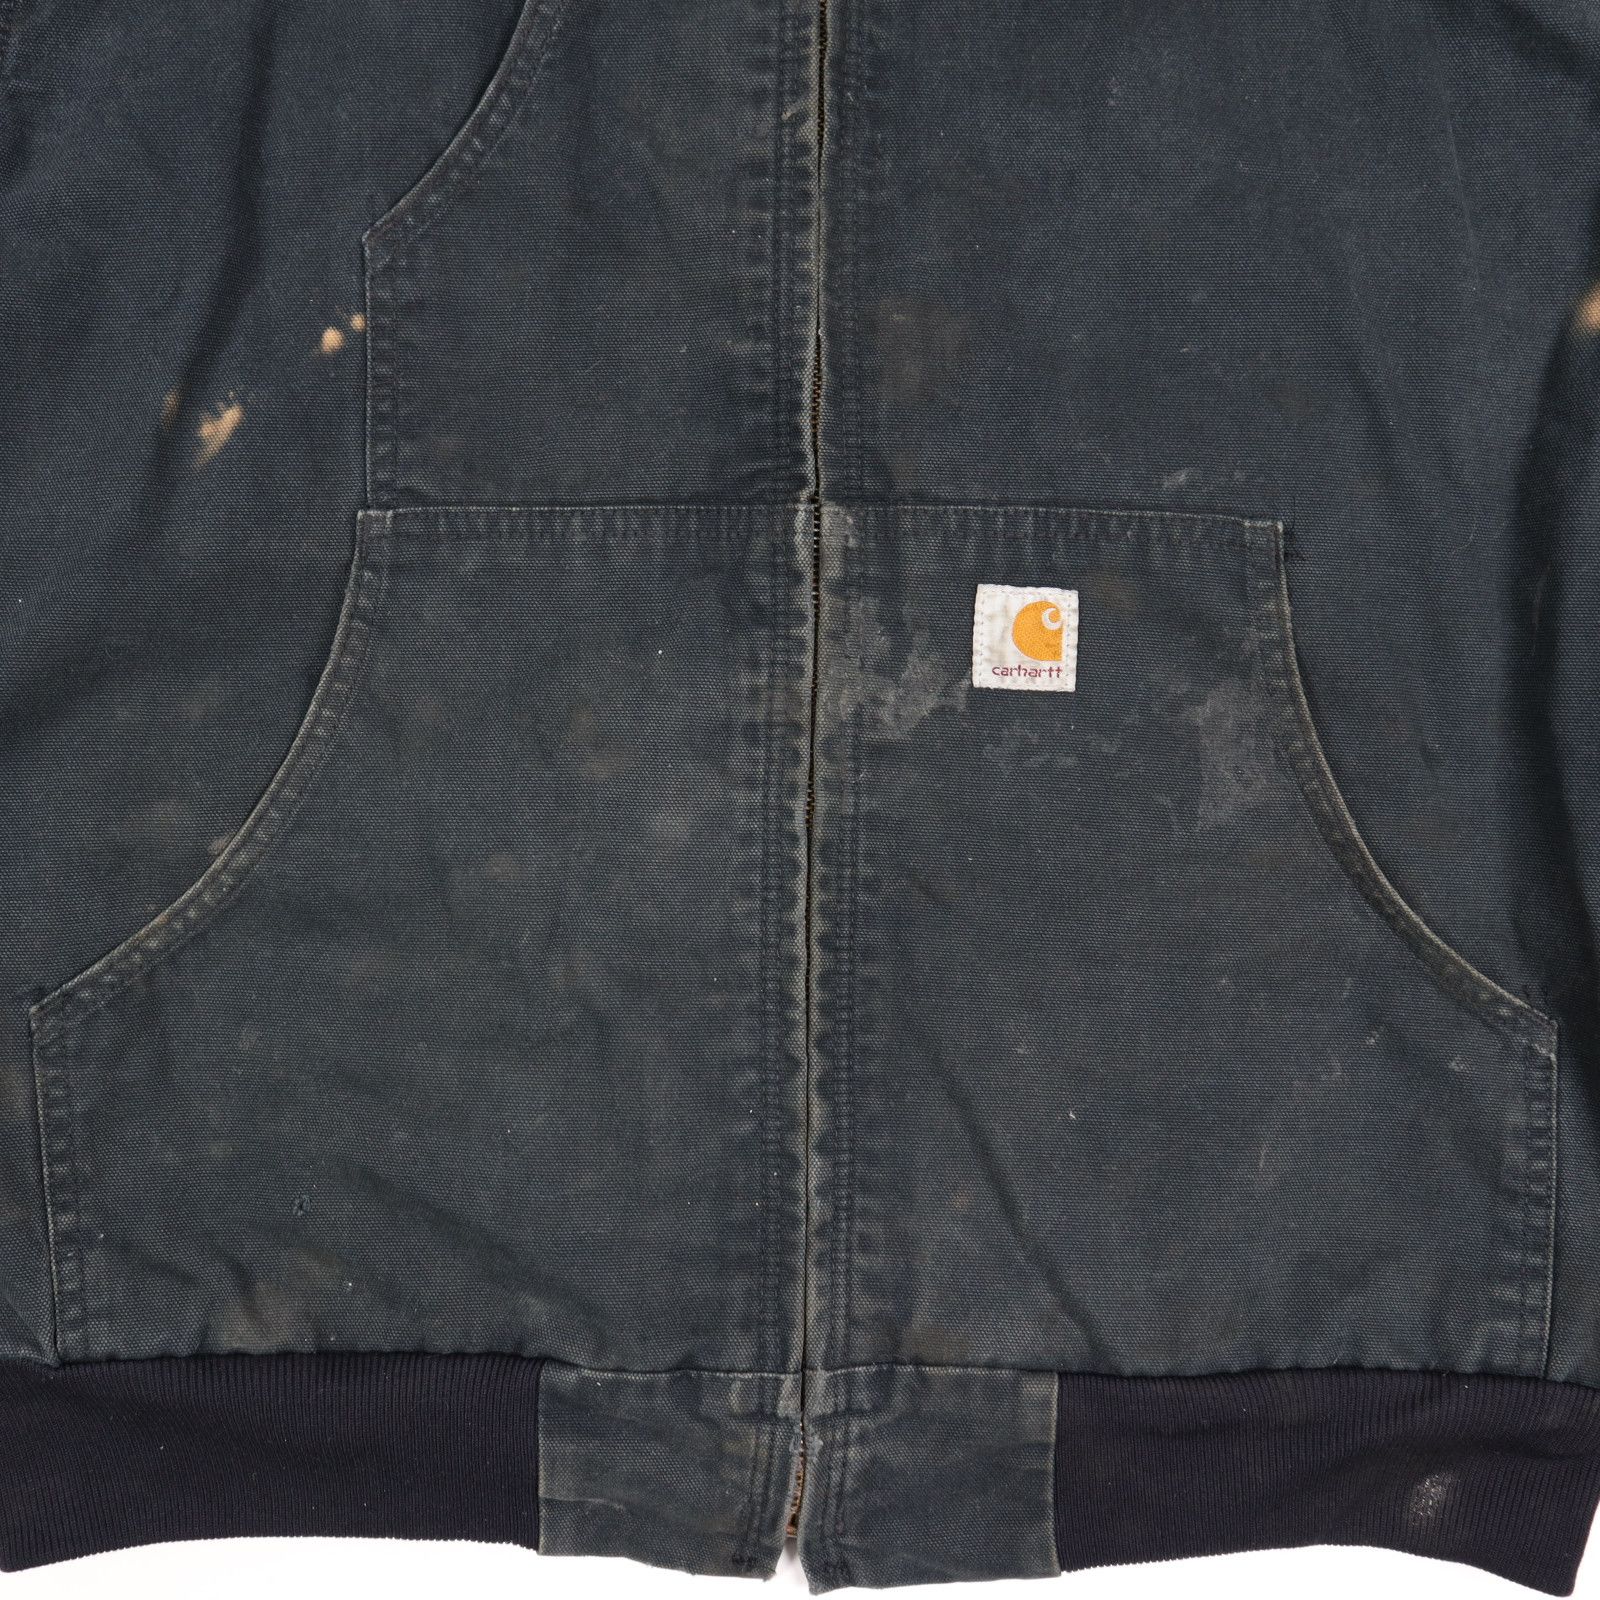 Carhartt Black Carhartt Hooded Jacket Size US L / EU 52-54 / 3 - 3 Thumbnail